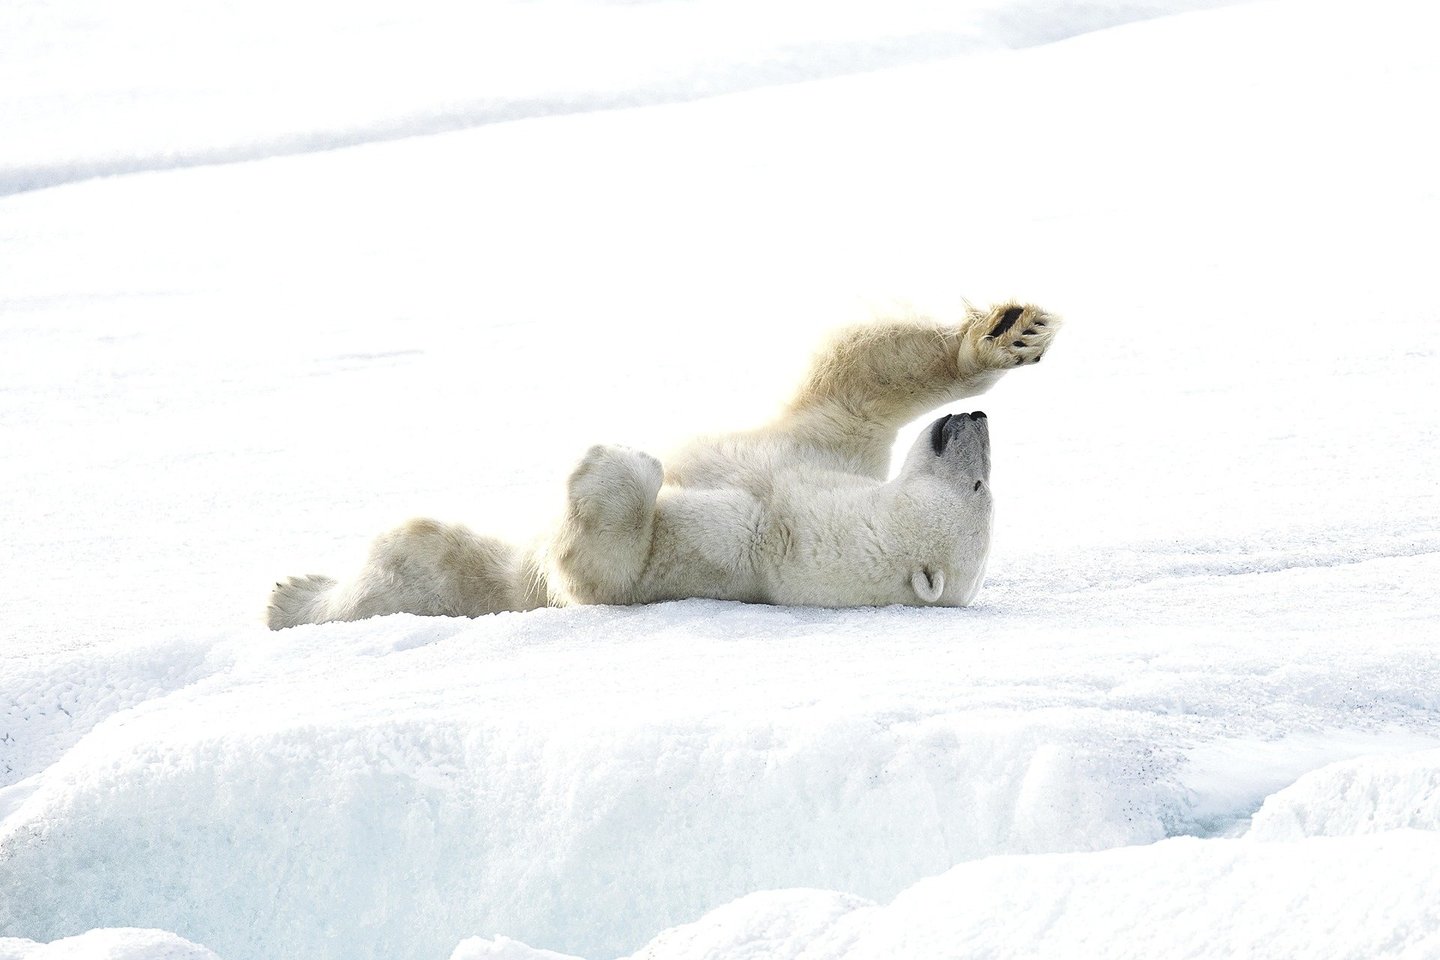 Atsipalaidavusi baltoji meška atliko jogos pratimus Norvegijoje, Svalbardo teritorijoje, ant užšalusio ežero ledo. <br>P.Williamso/„SWNS.com“ nuotr.